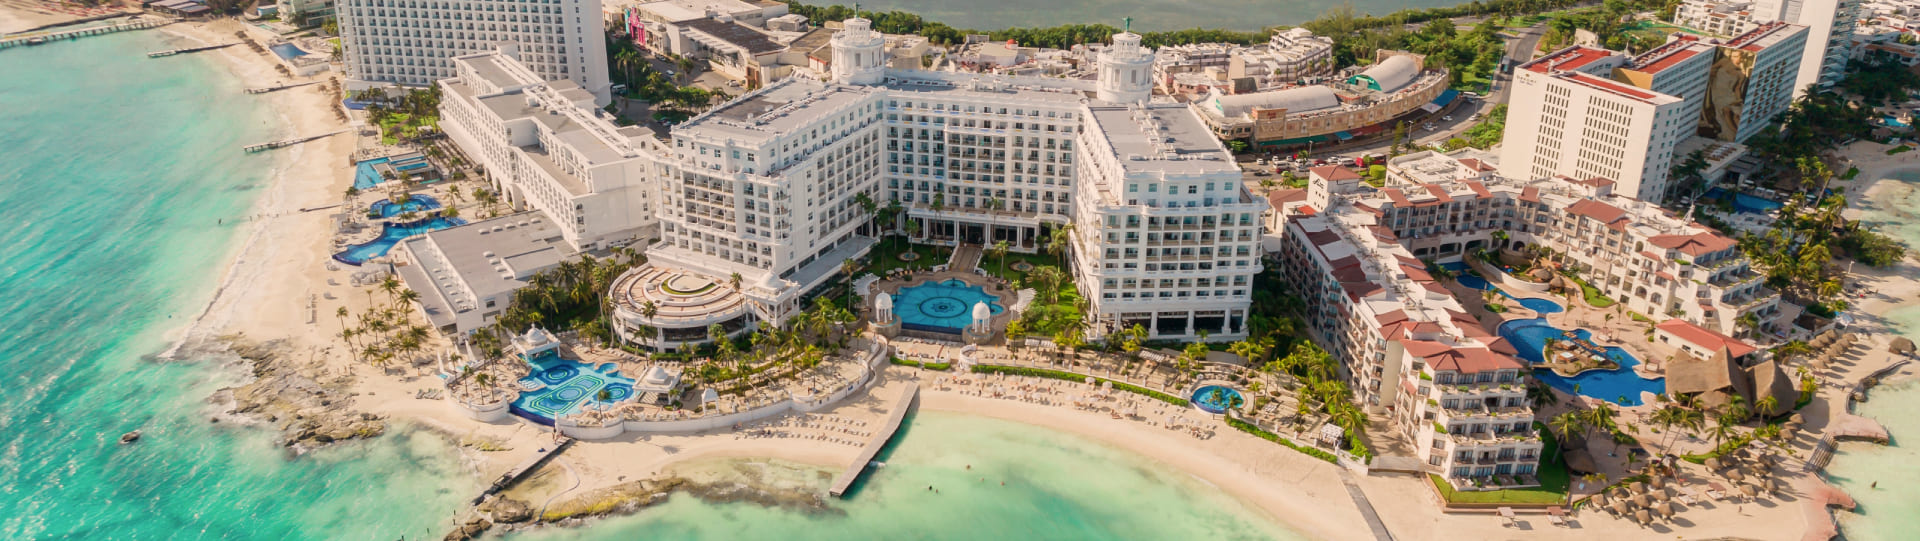 Hoteles Destino Cancún